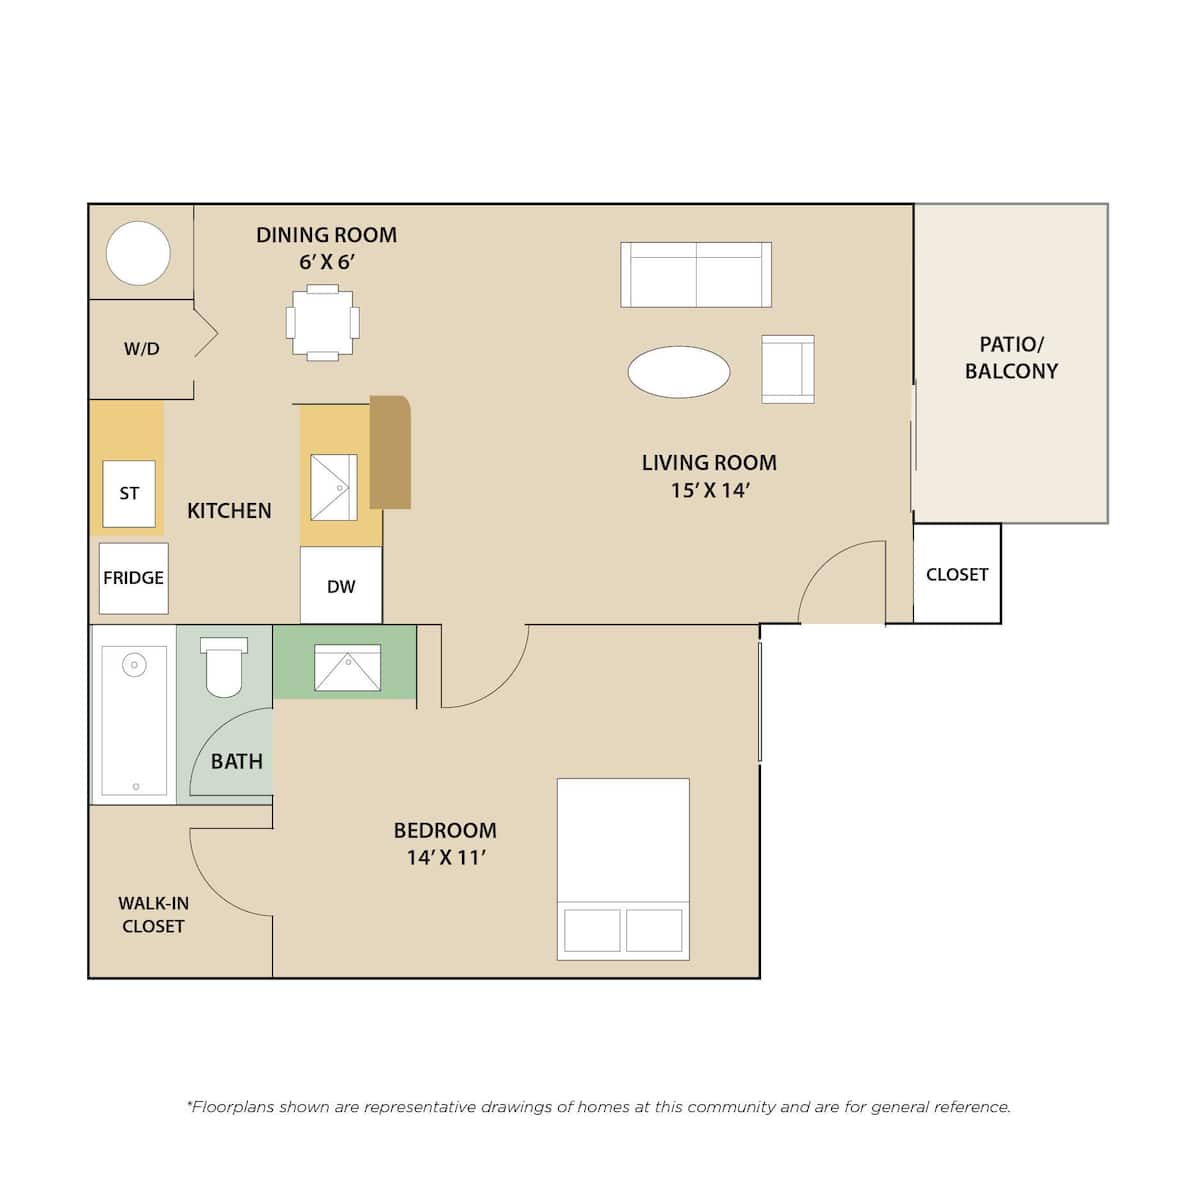 Floorplan diagram for The Hampton, showing 1 bedroom